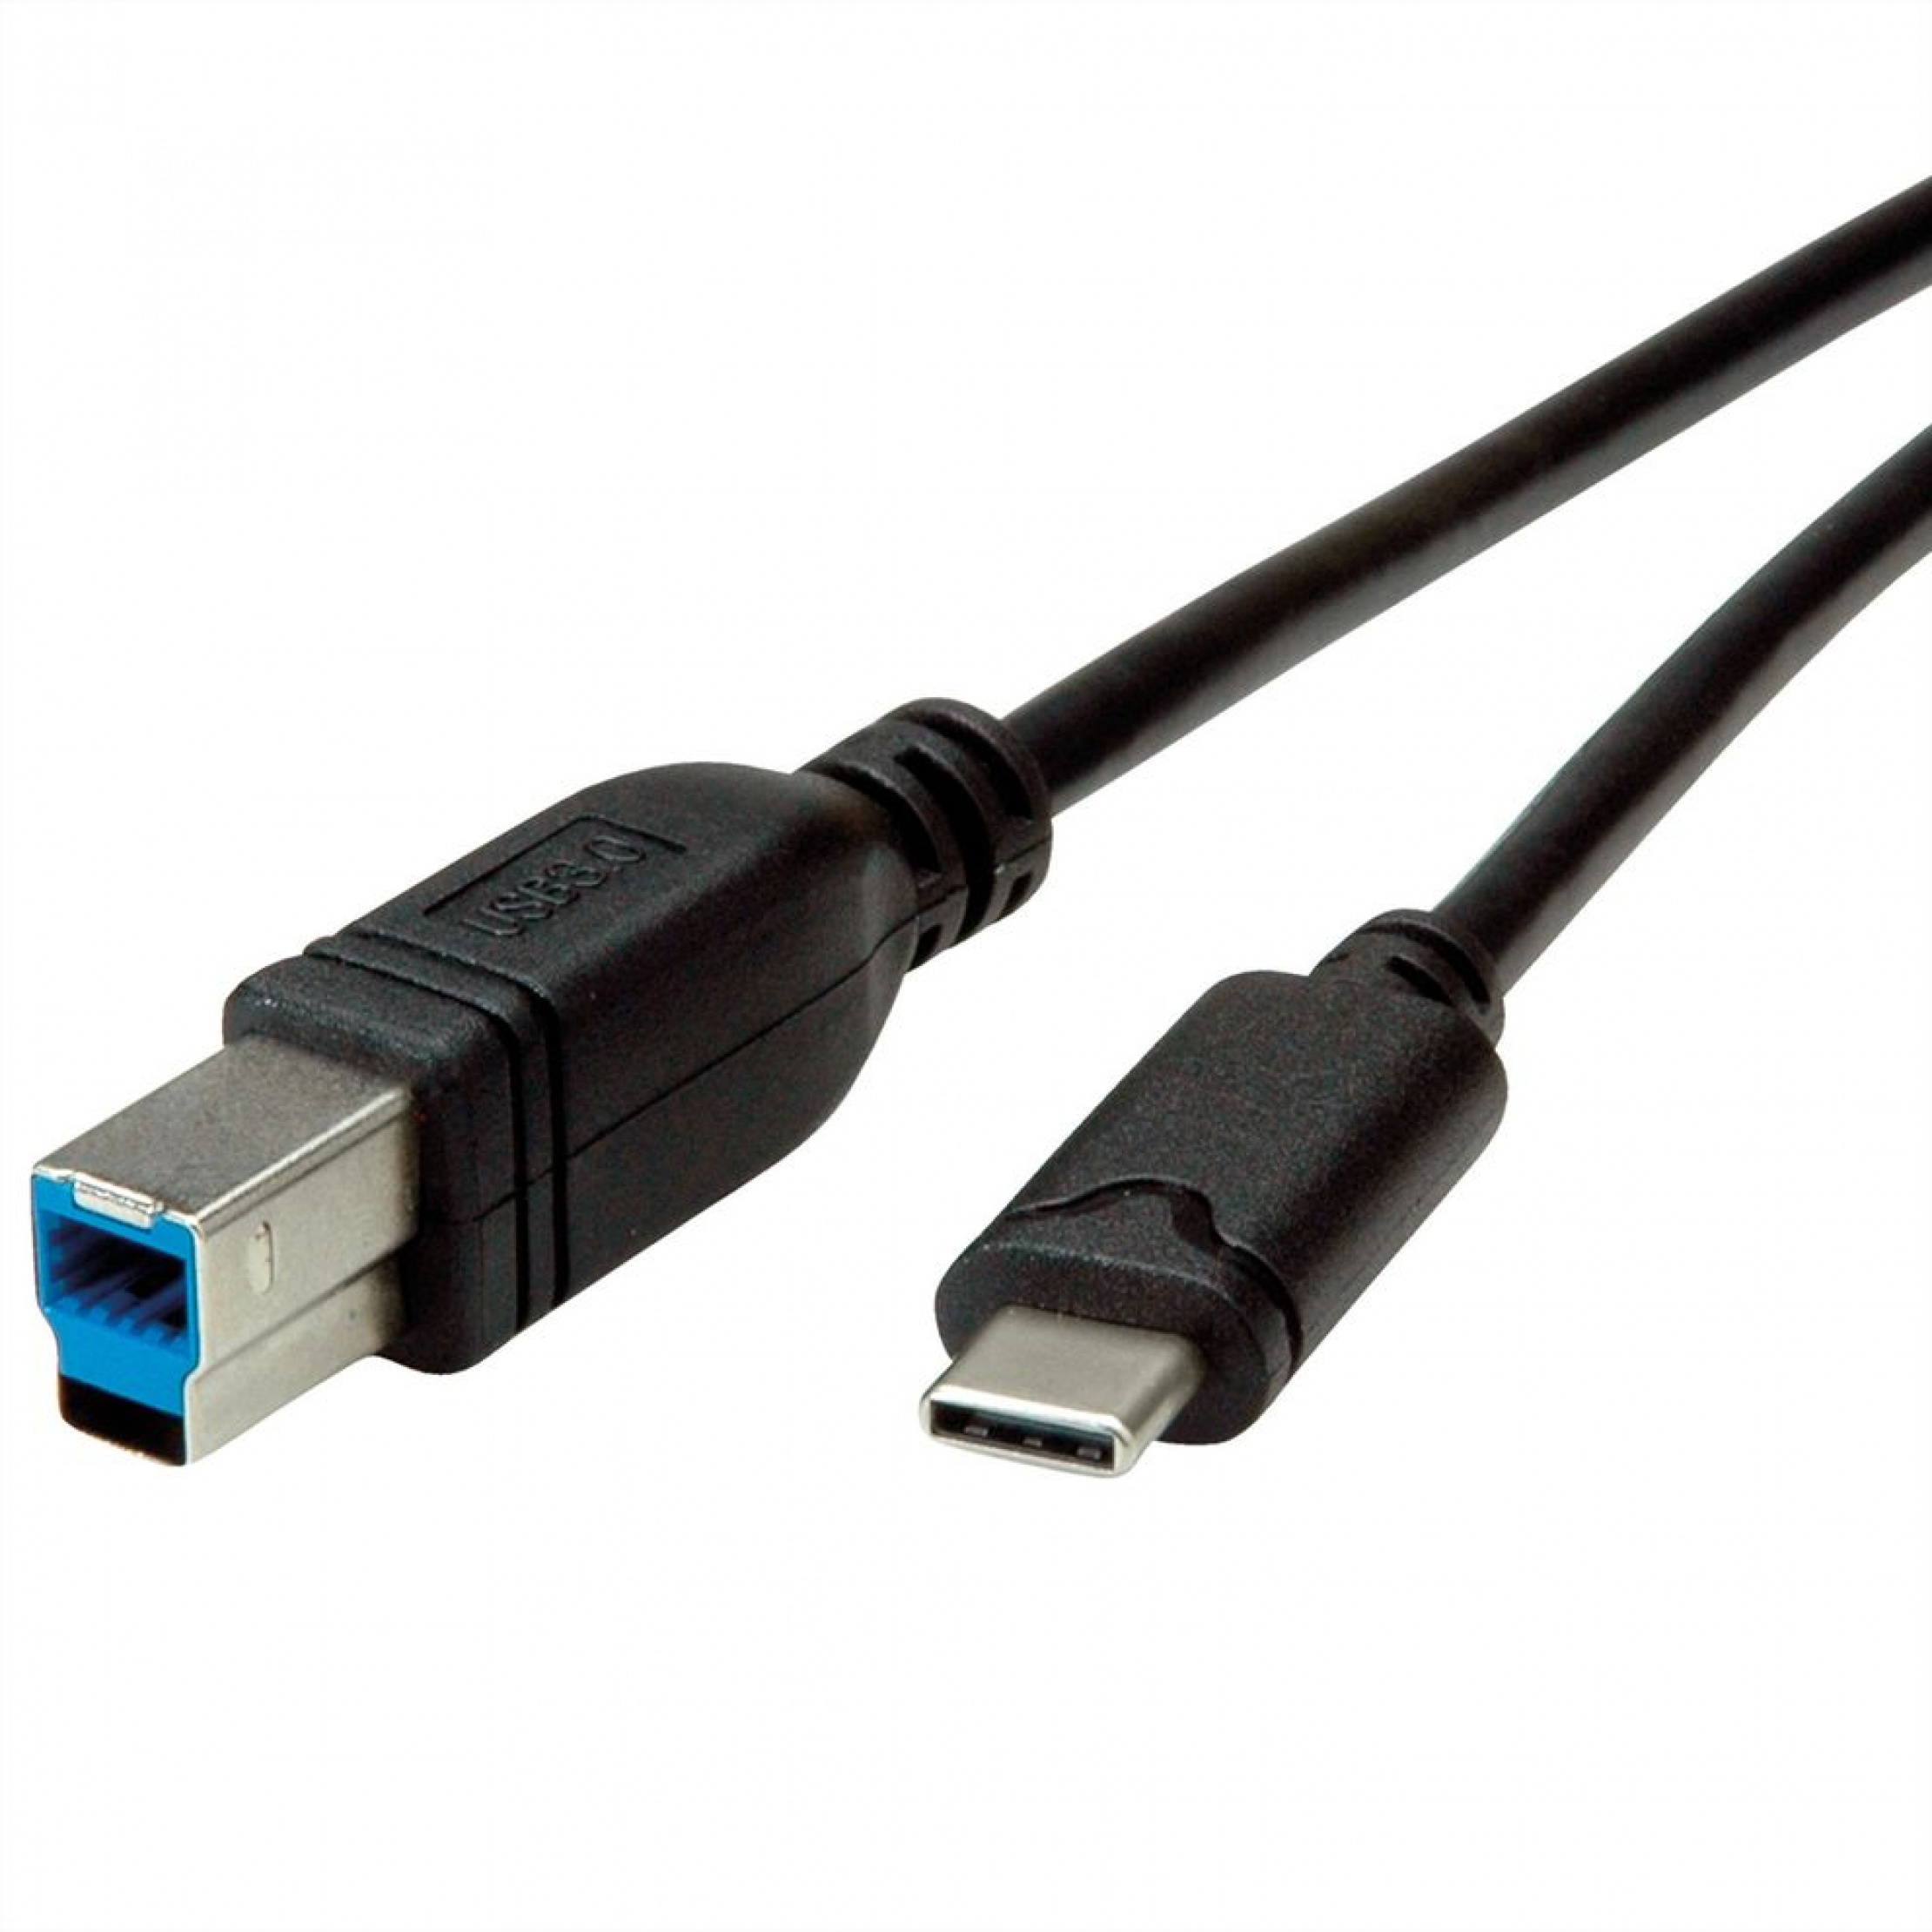 Usb c gen1. USB 3.2 Gen 1 разъем. USB 3.2 gen1 Micro-b. USB 3.2 gen1 Type-a. Кабель USB 3.2 gen2x2 Type-c.